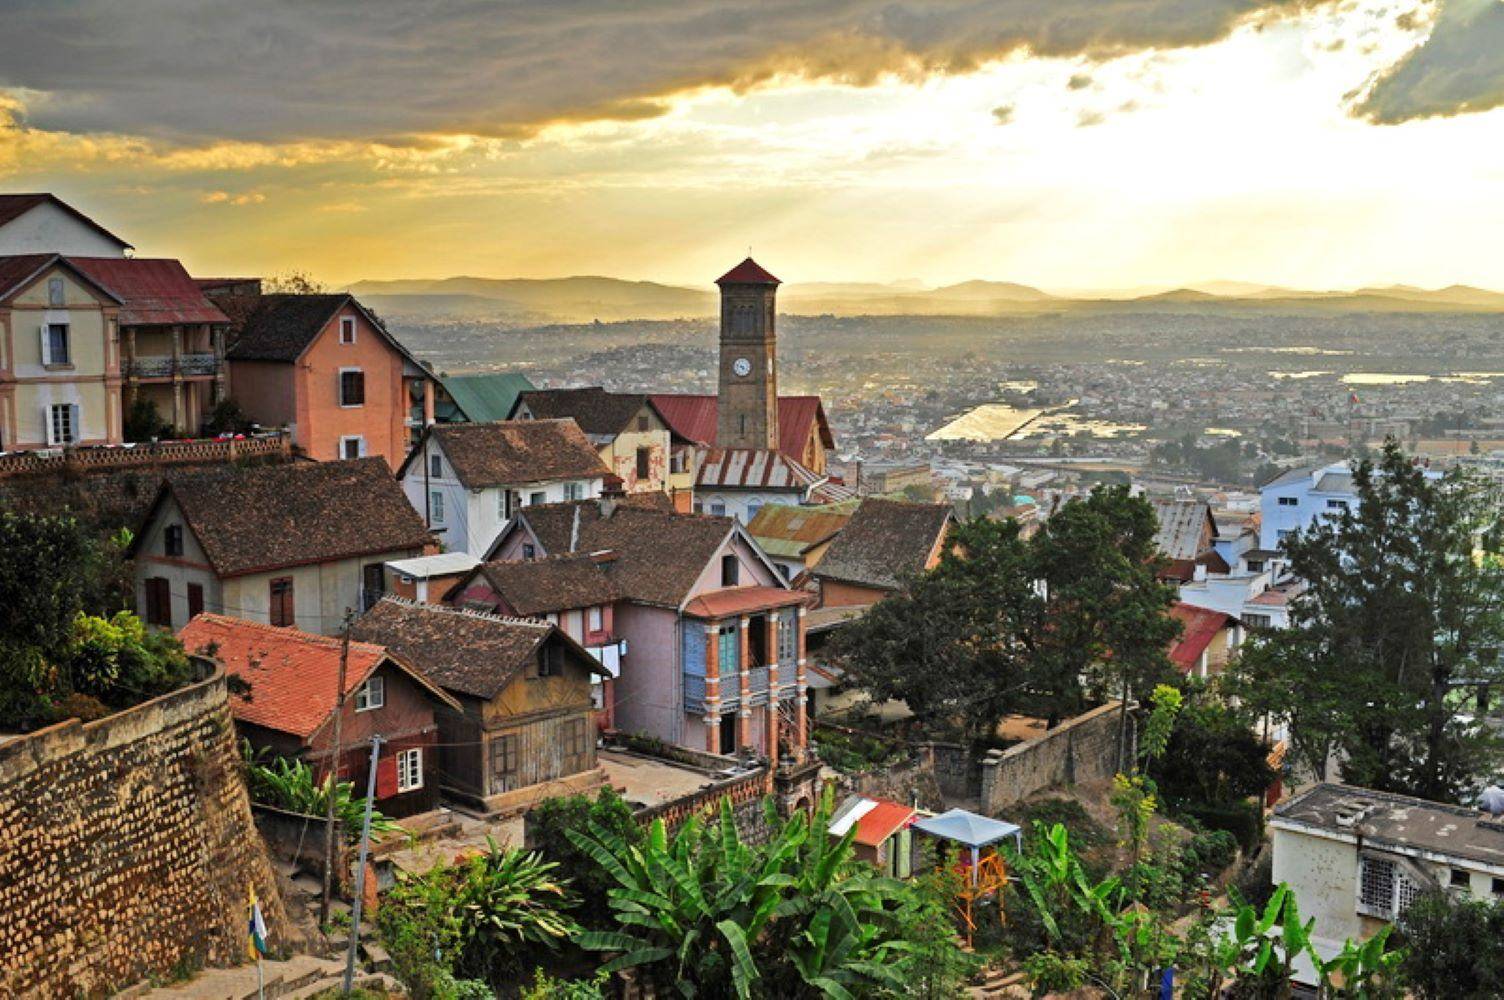 Vol retour sur Antananarivo